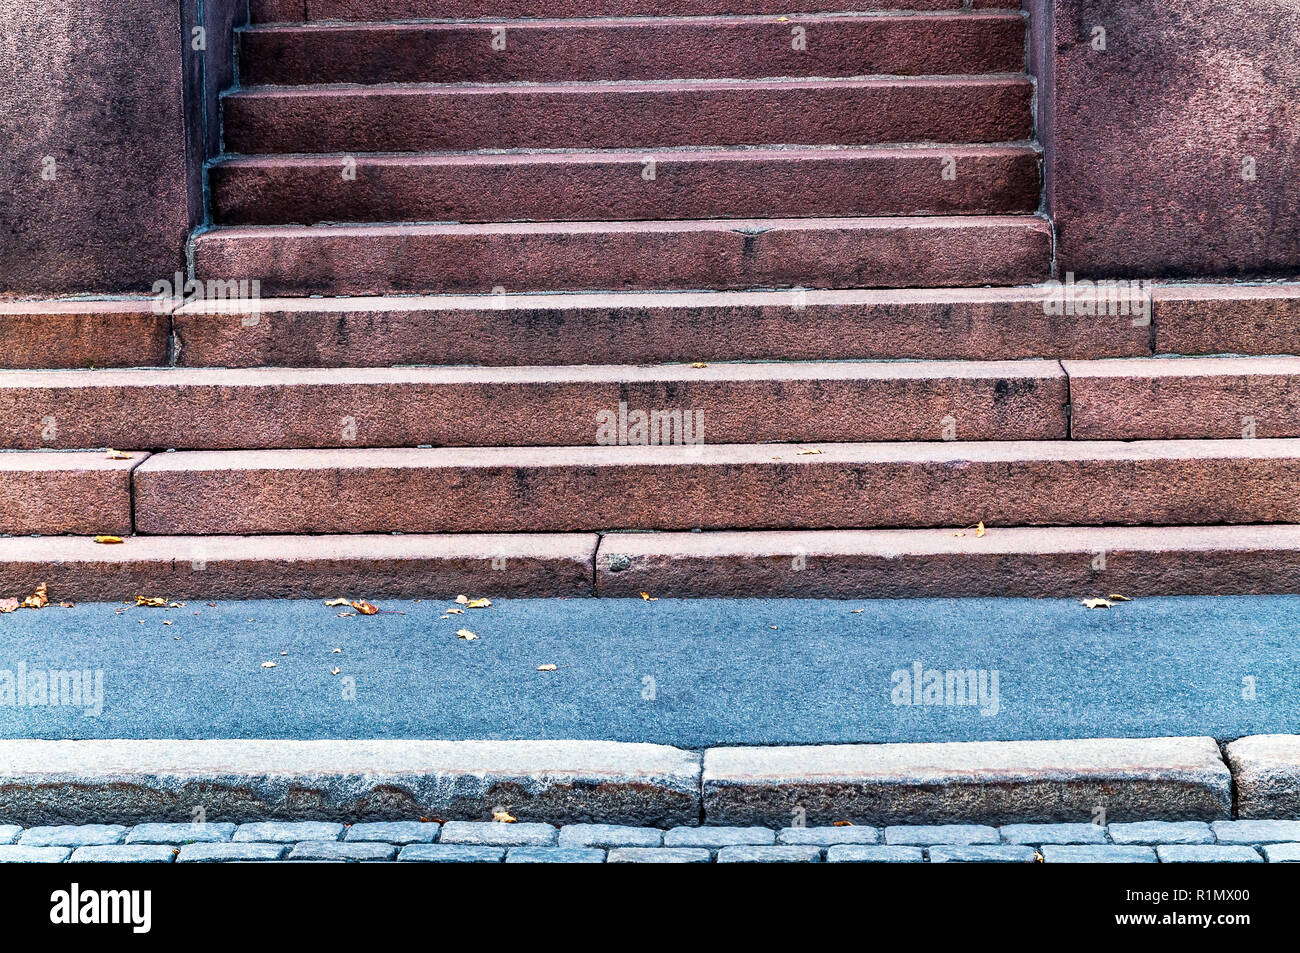 Detalle de la entrada del edificio urbano con ancianos y soportó la escalera de piedra que daba a la calle y aceras de la ciudad - antigua fachada arquitectónica con pasos en forma geométrica y líneas Foto de stock